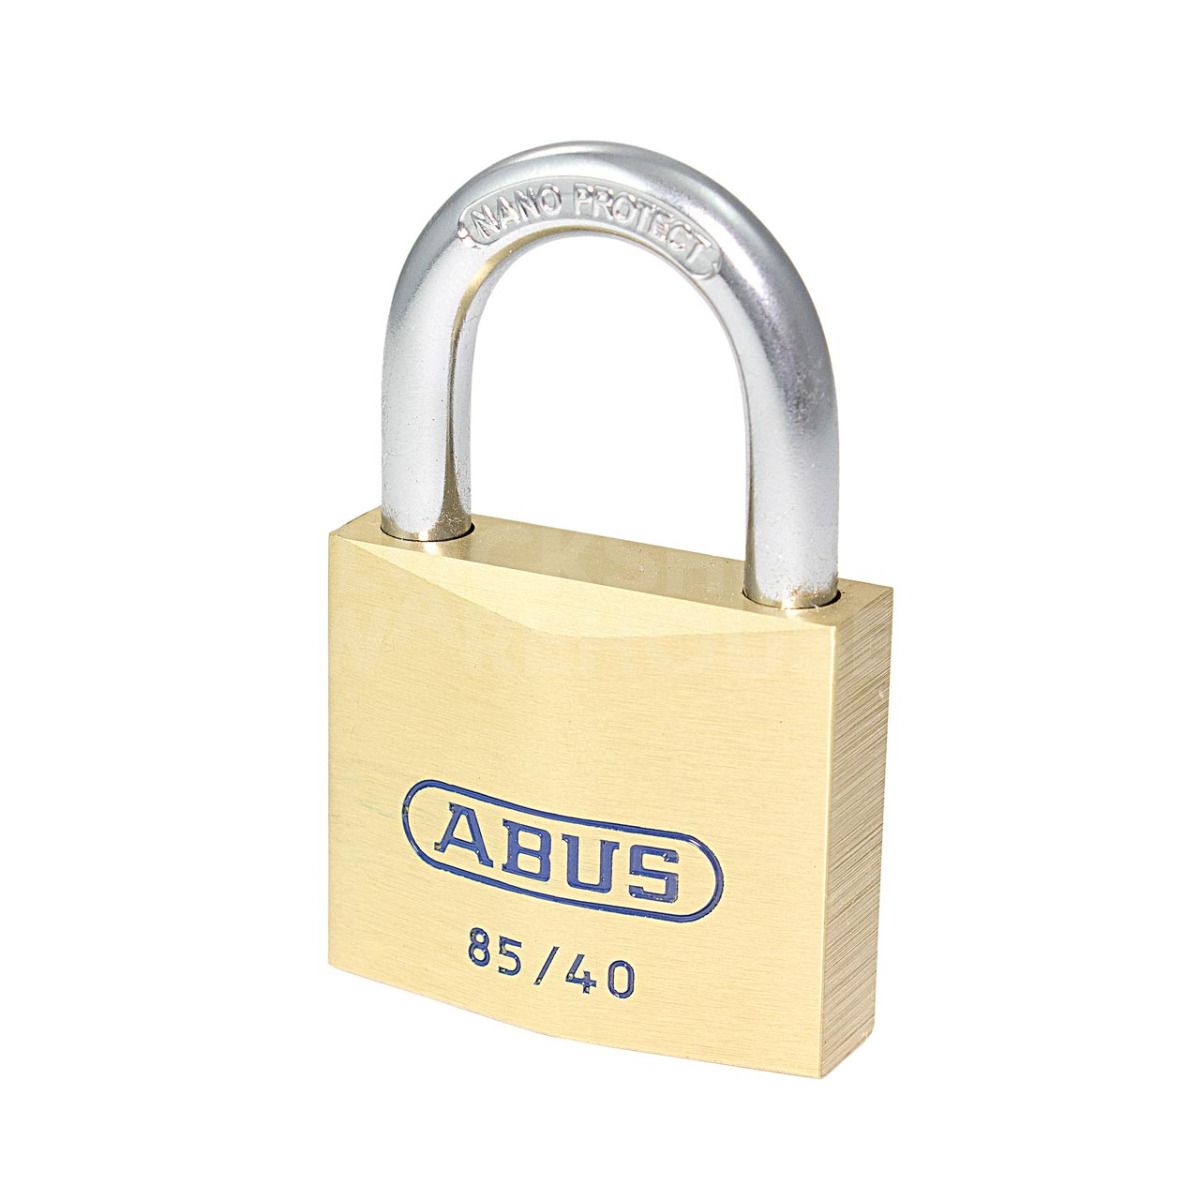 ABUS 85/40 Brass Padlock